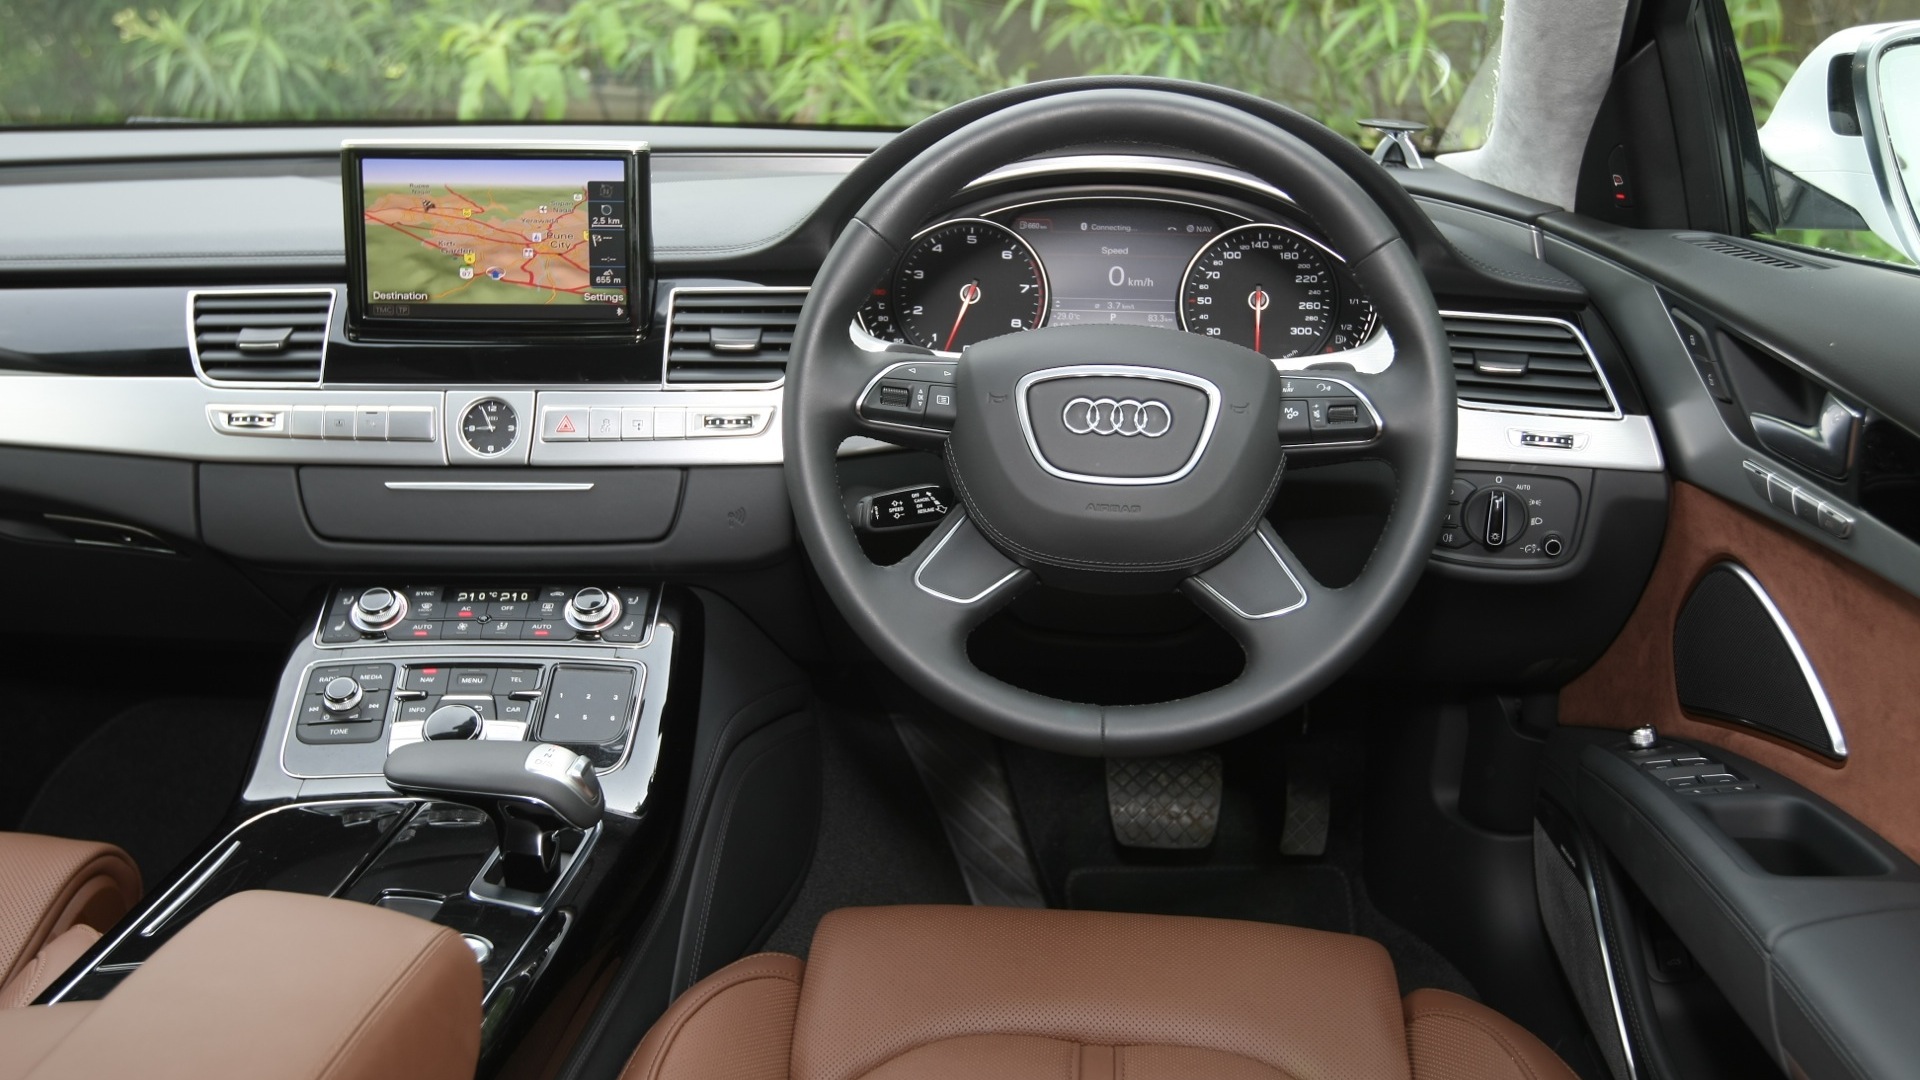 Audi-A8l-2012-6-3-FSI-Quattro-Interior